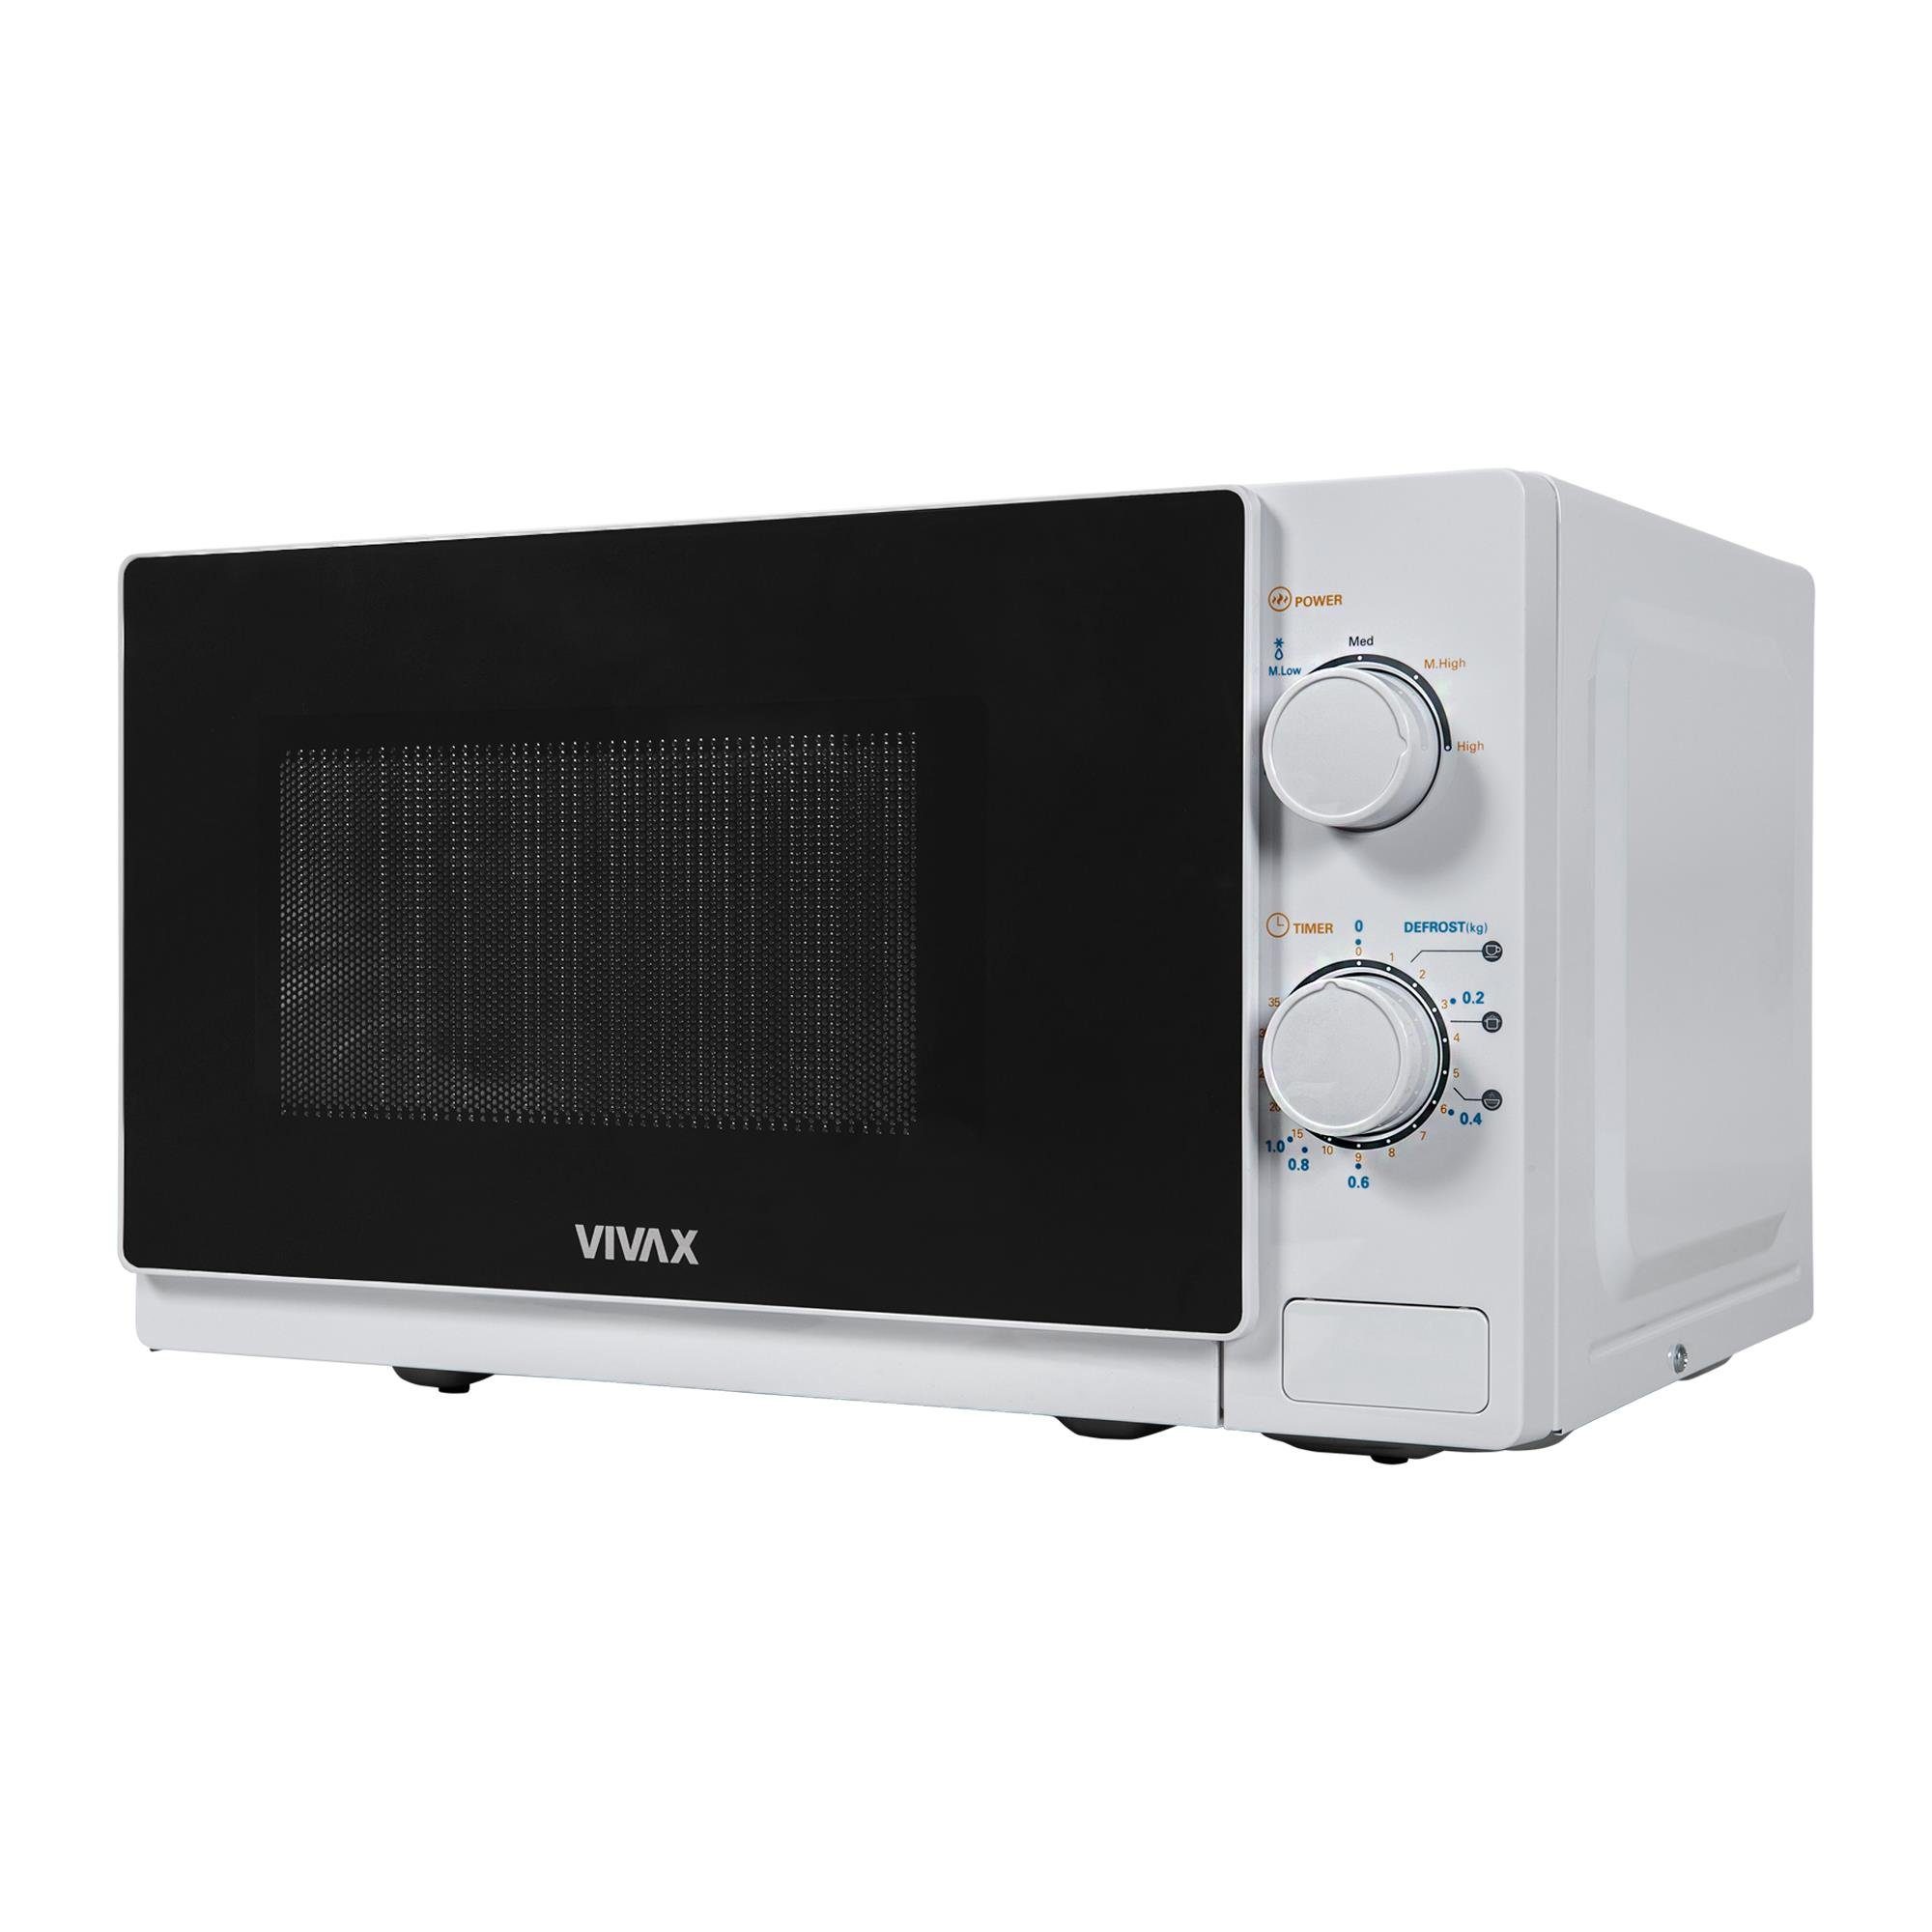 MWO-2077, Mikrowelle Vivax 20 20l, Mikrowelle, in weiß, l 700W